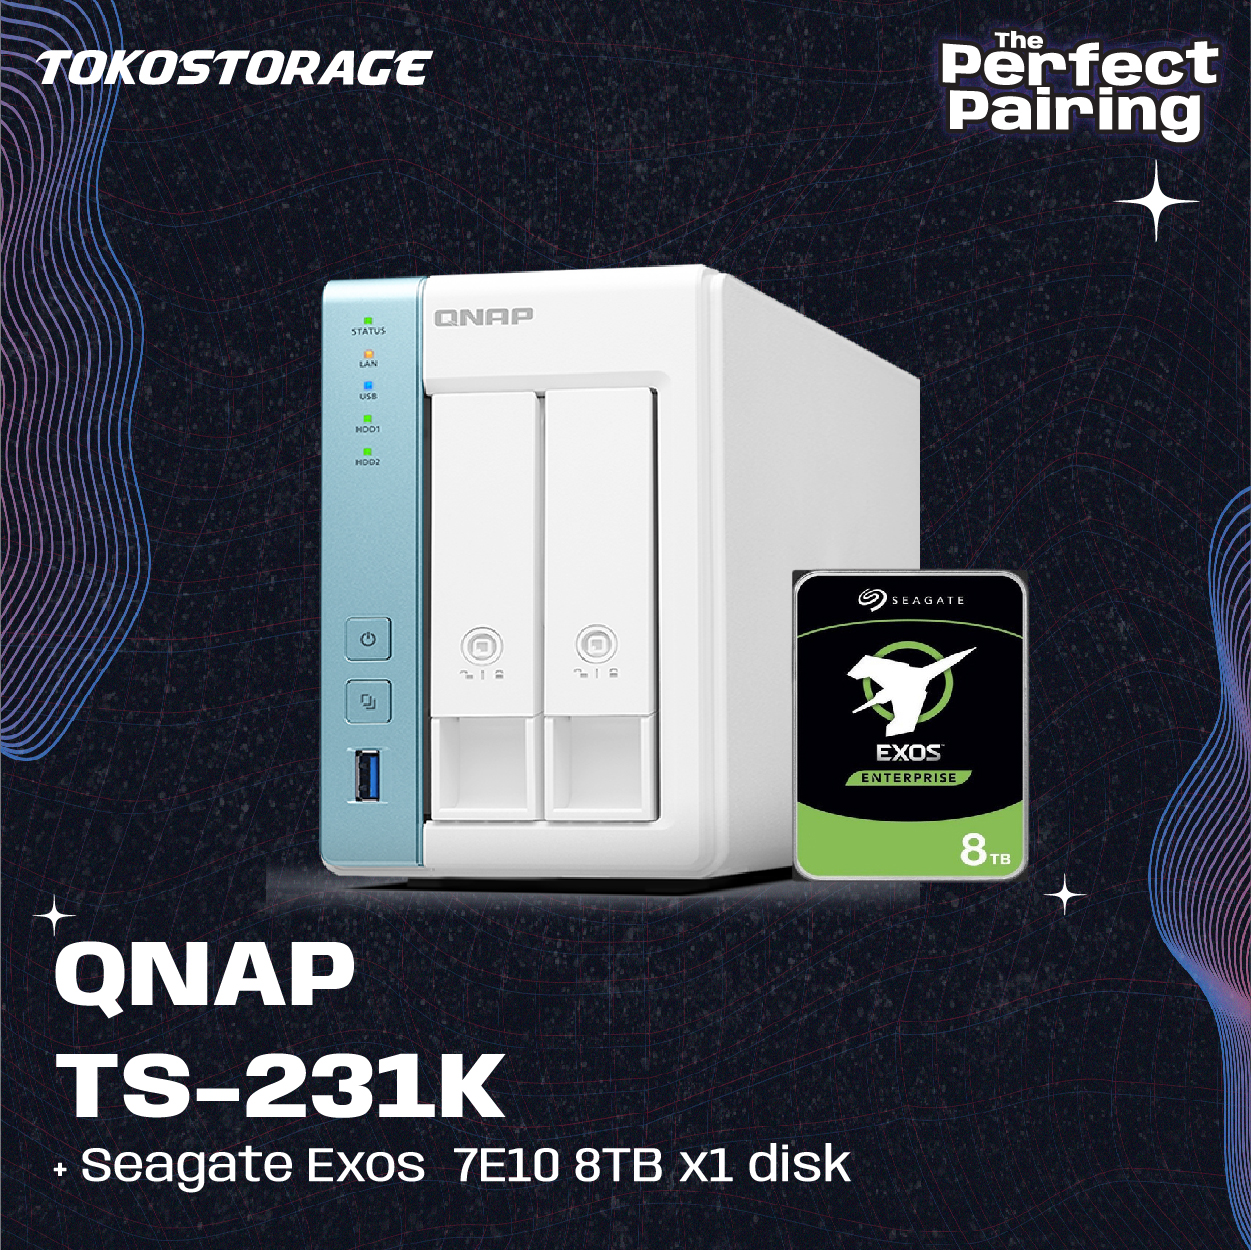 QNAP TS-231K dan HDD Seagate EXOS 8TB - 1 x 8TB